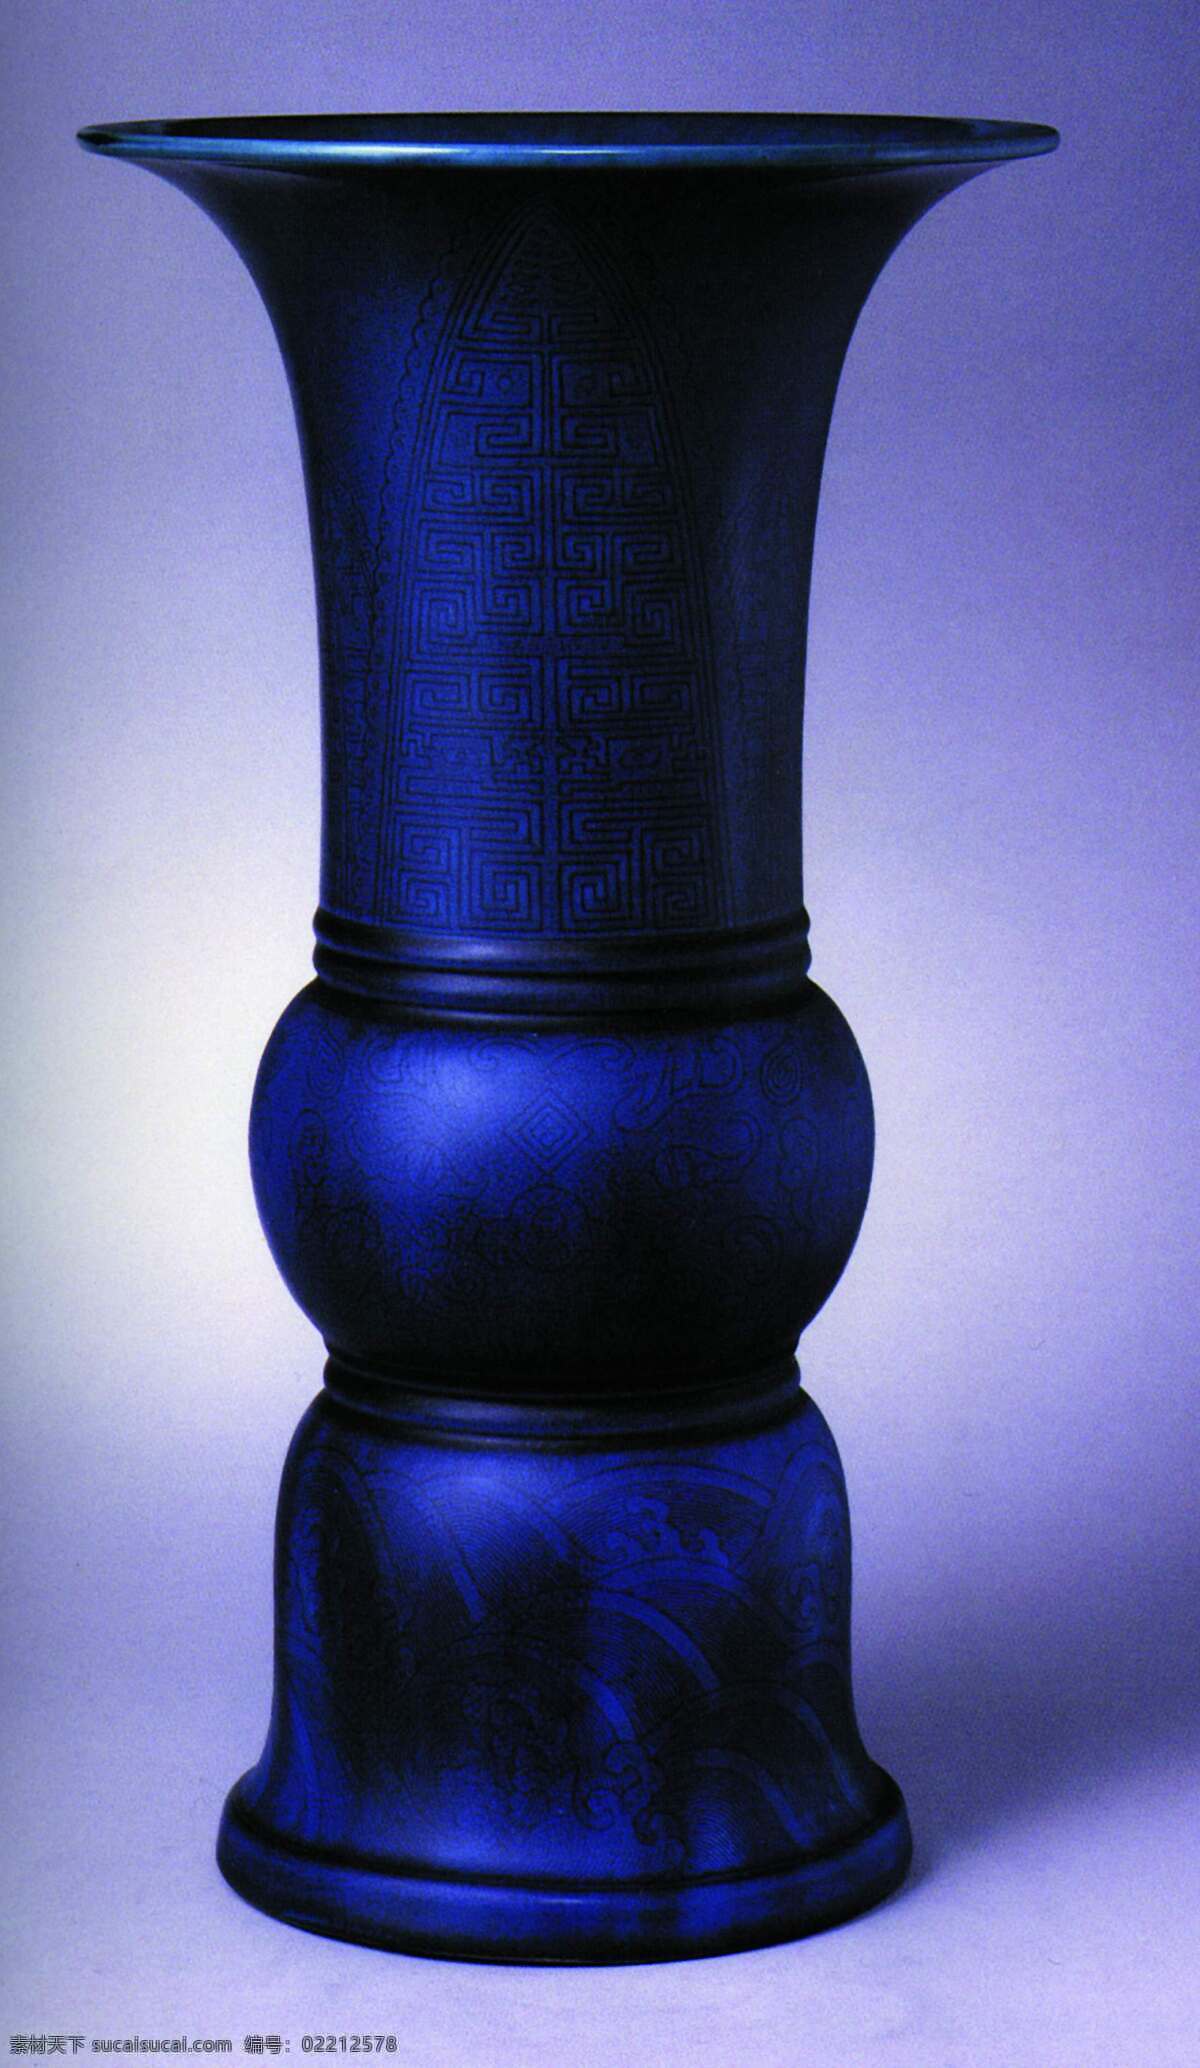 盘子免费下载 瓷器 古董 花瓶 盘子 陶瓷 碗 艺术品 中国风 中华艺术绘 文化艺术